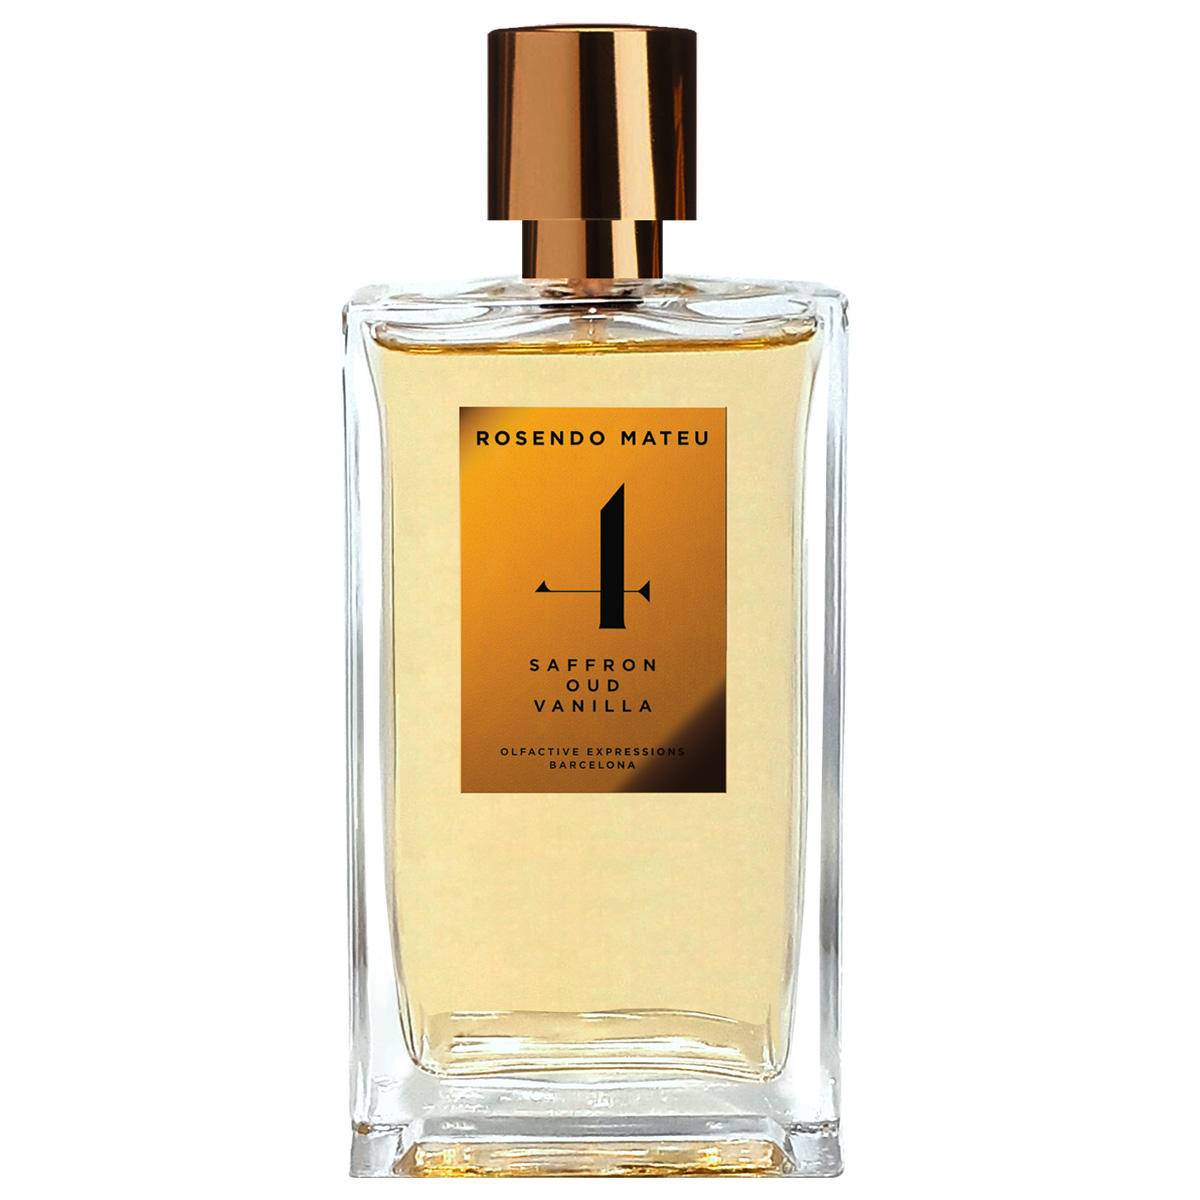 Rosendo Mateu No. 4 Eau de Parfum 100 ml - 1